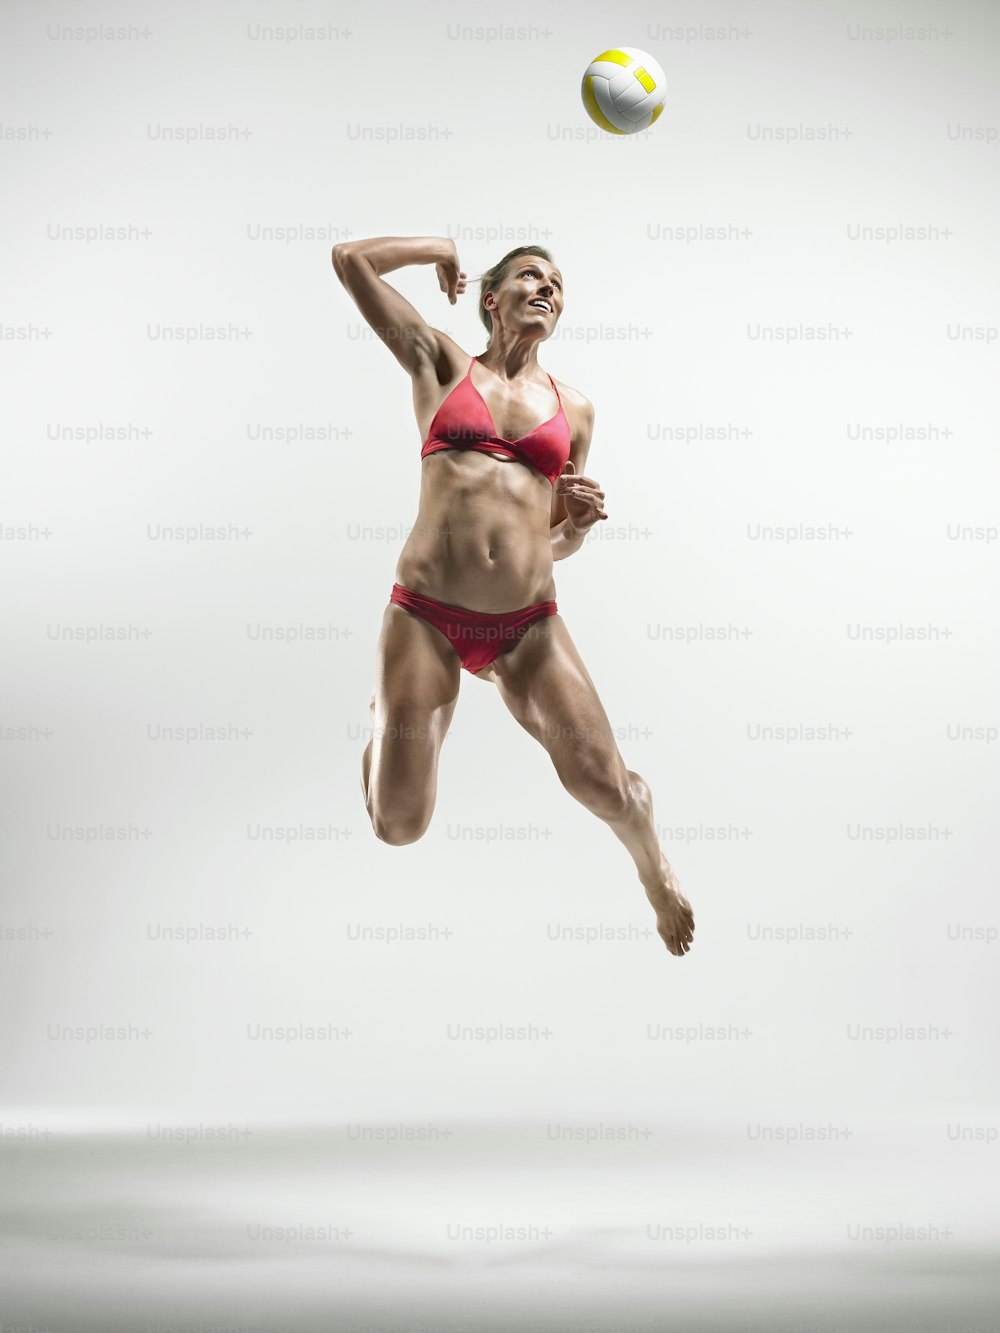 Eine Frau im Bikini springt in die Luft, um einen Ball zu fangen